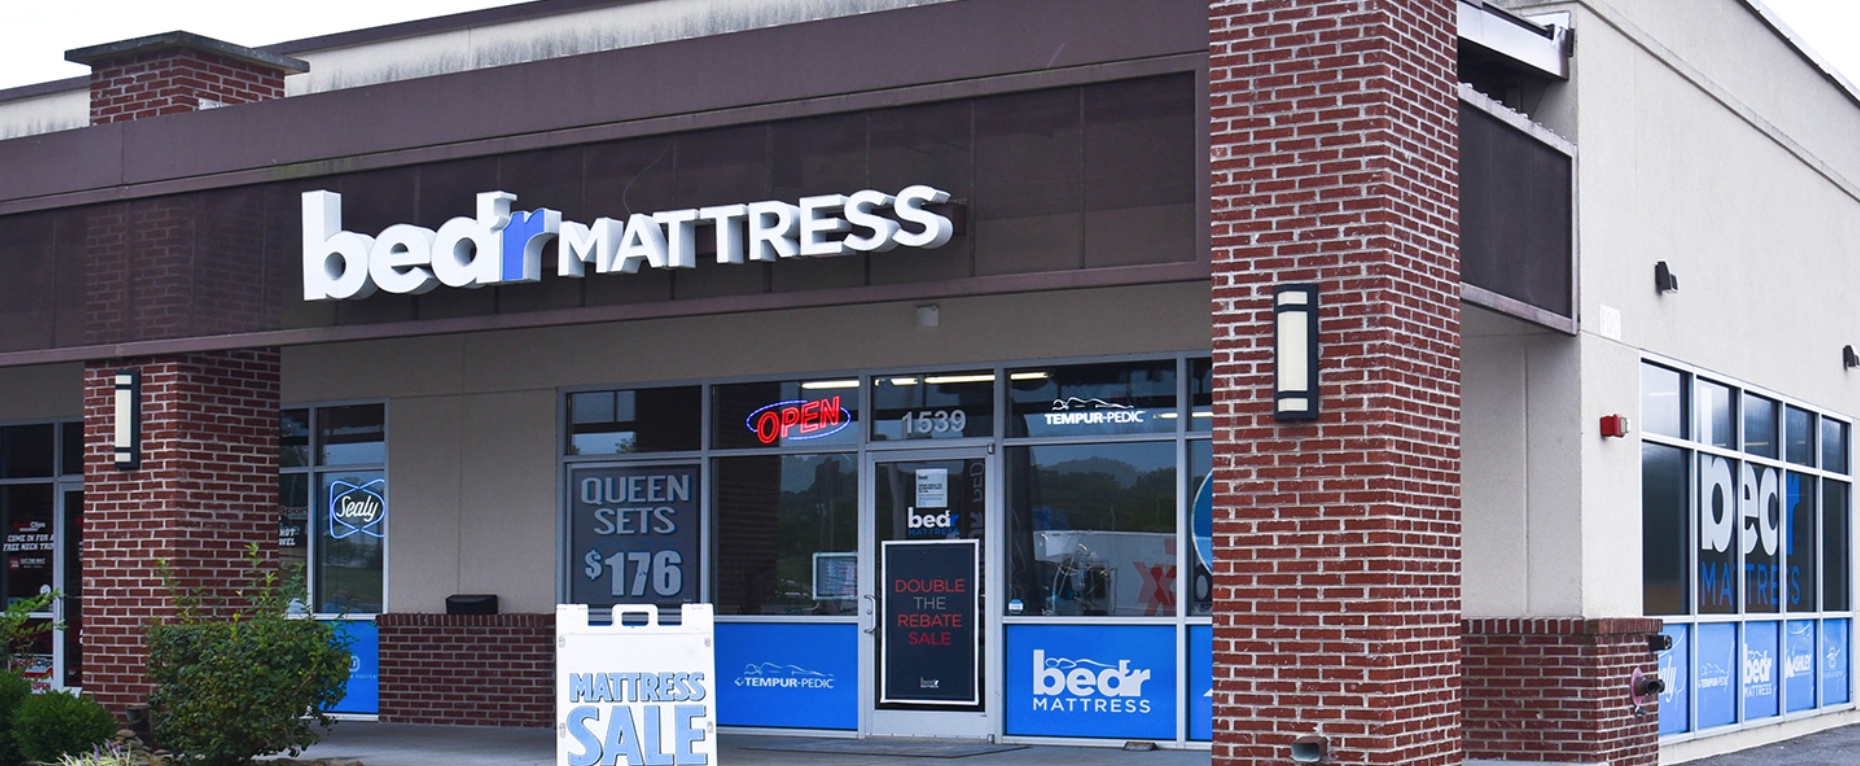 Knoxville Matress Store Knoxville Mattress Store Bed R Mattress